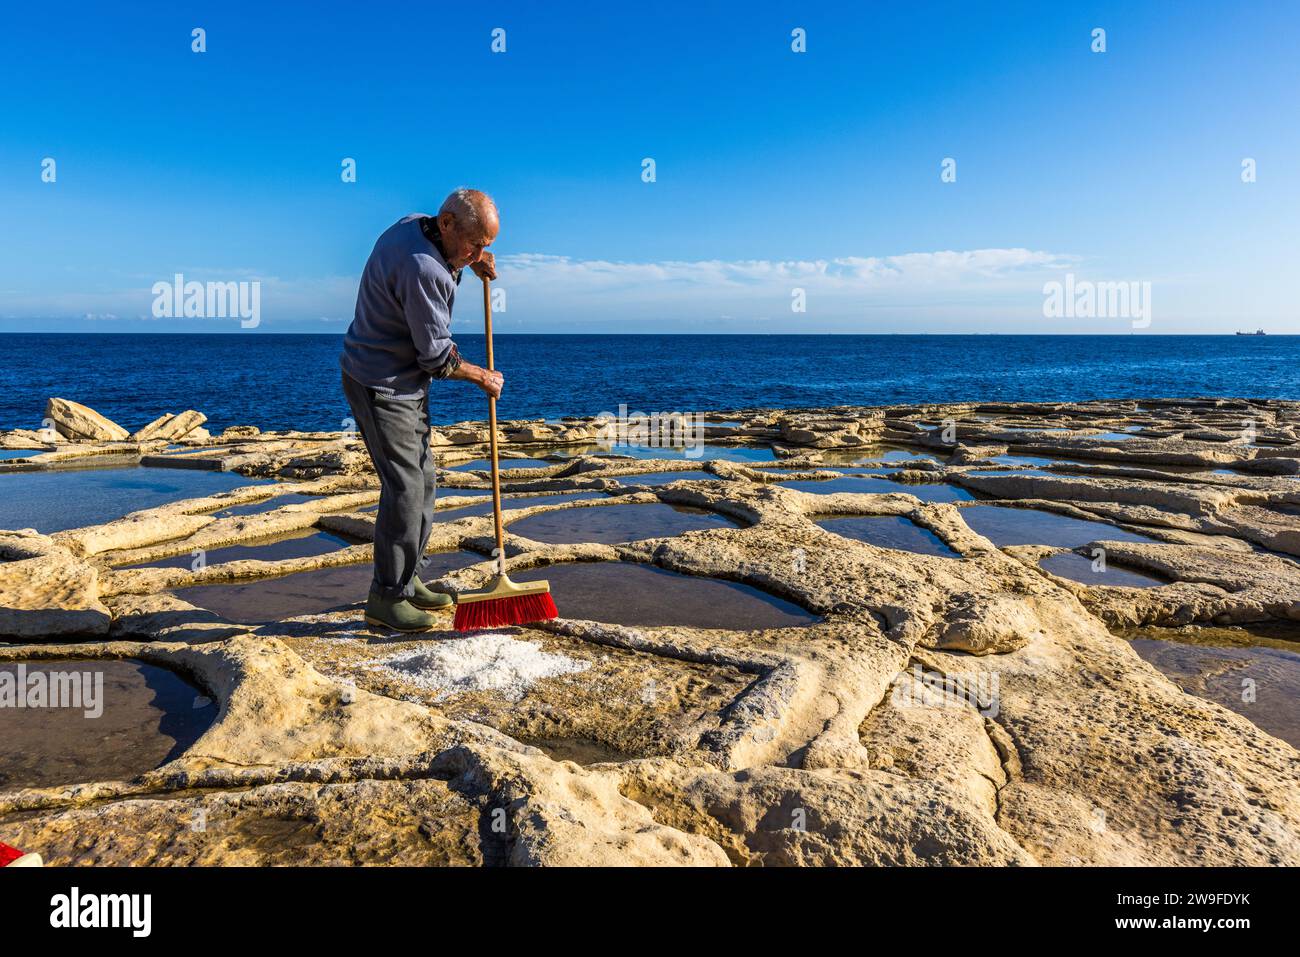 Żaren Darmanin, Salzbauer in Malta, demonstriert die Salzernte in seinen Salinen in Marsaskala. Die Pfannen sind mit Salzwasser gefüllt. Das Mittelmeer hat einen Salzgehalt von 3 Prozent. Darmanin Salinen in der Nähe von Marsascala, Malta Stockfoto